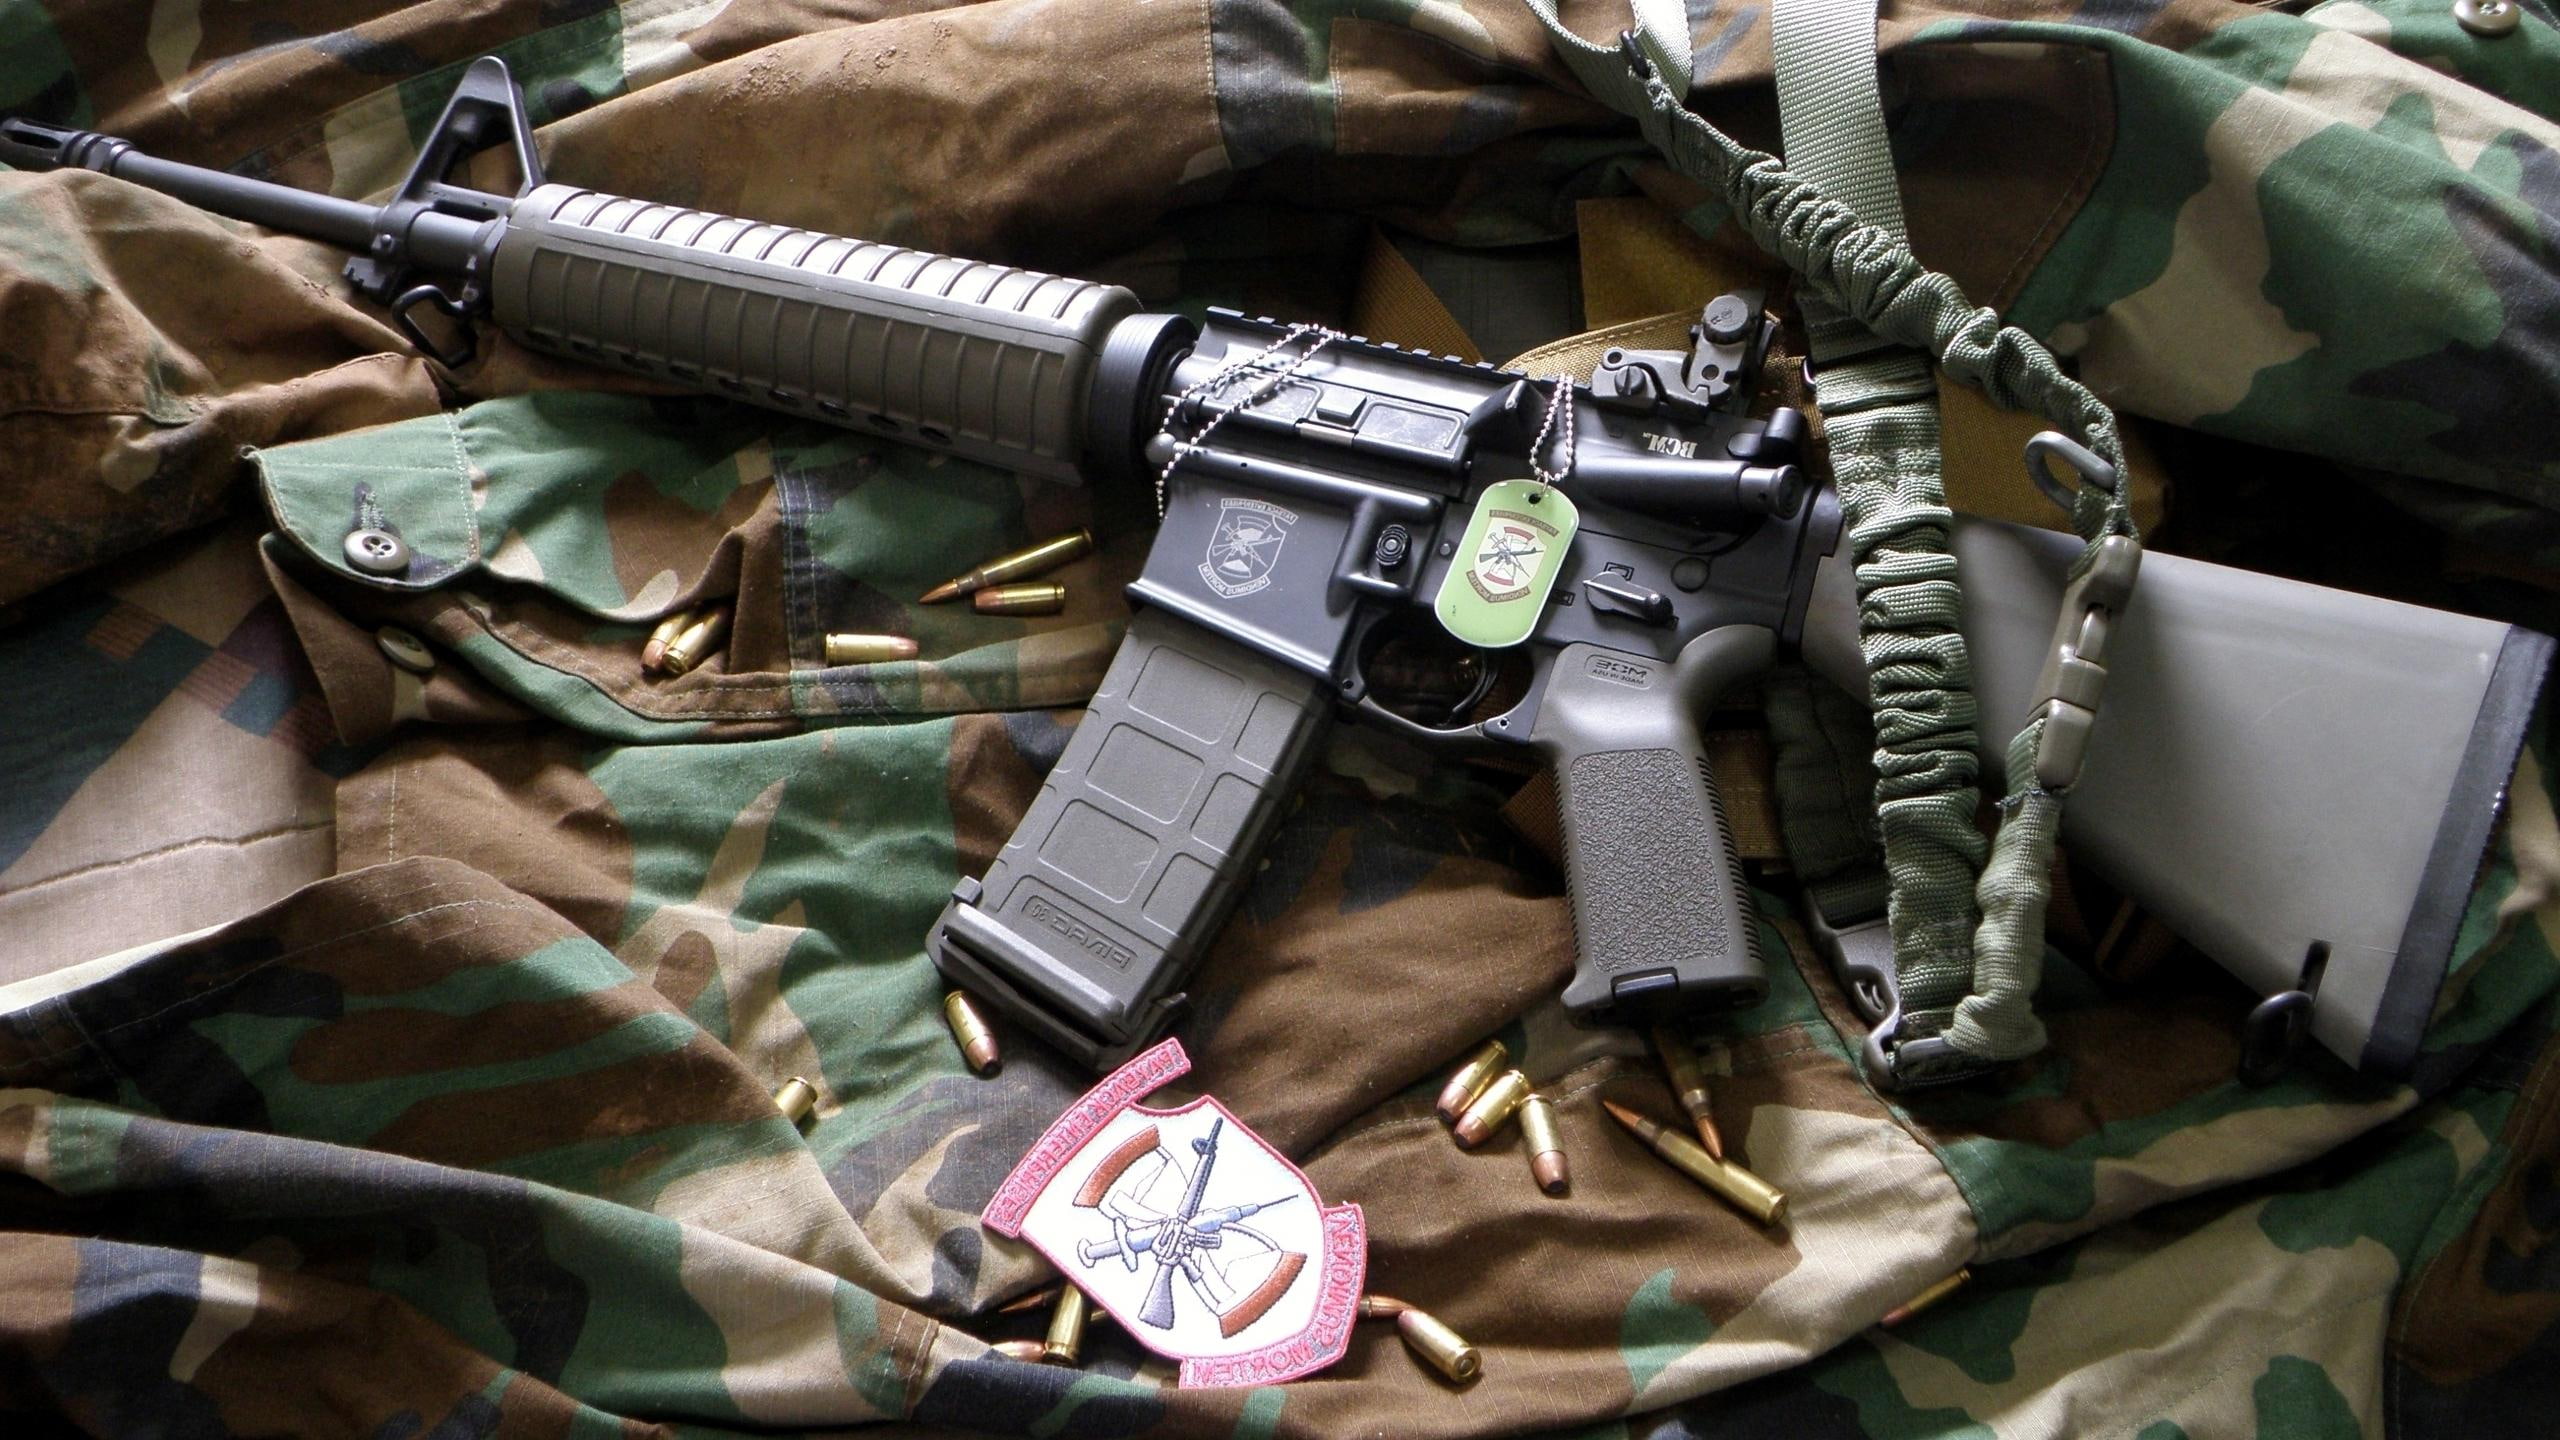 British SA-80 rifle from 1996, black and gray rifle and bullets